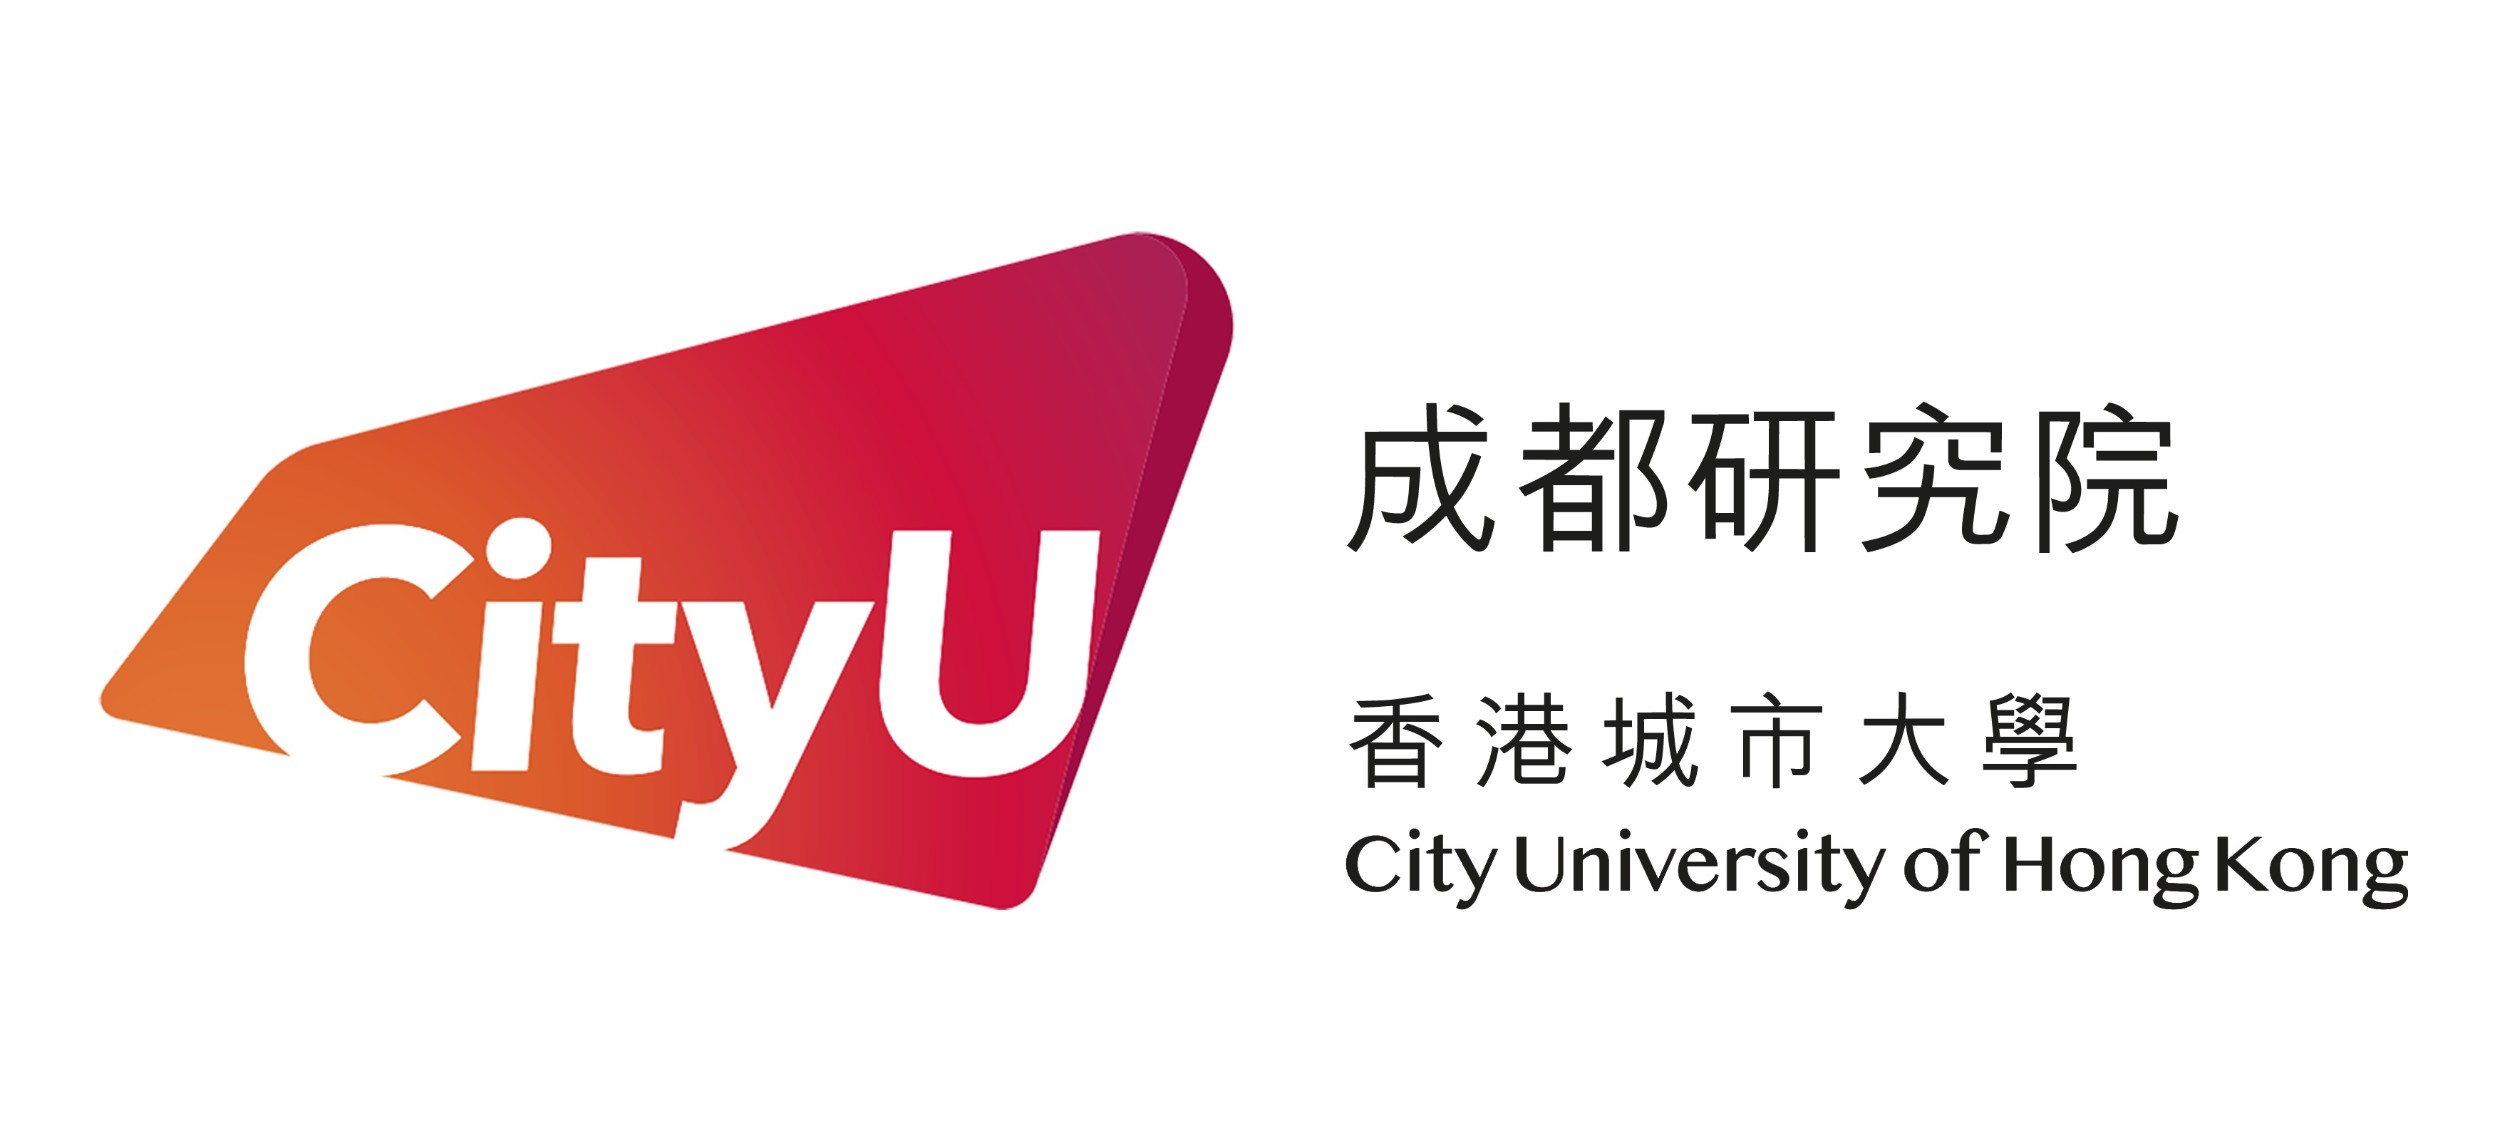 香港城市大学成都研究院